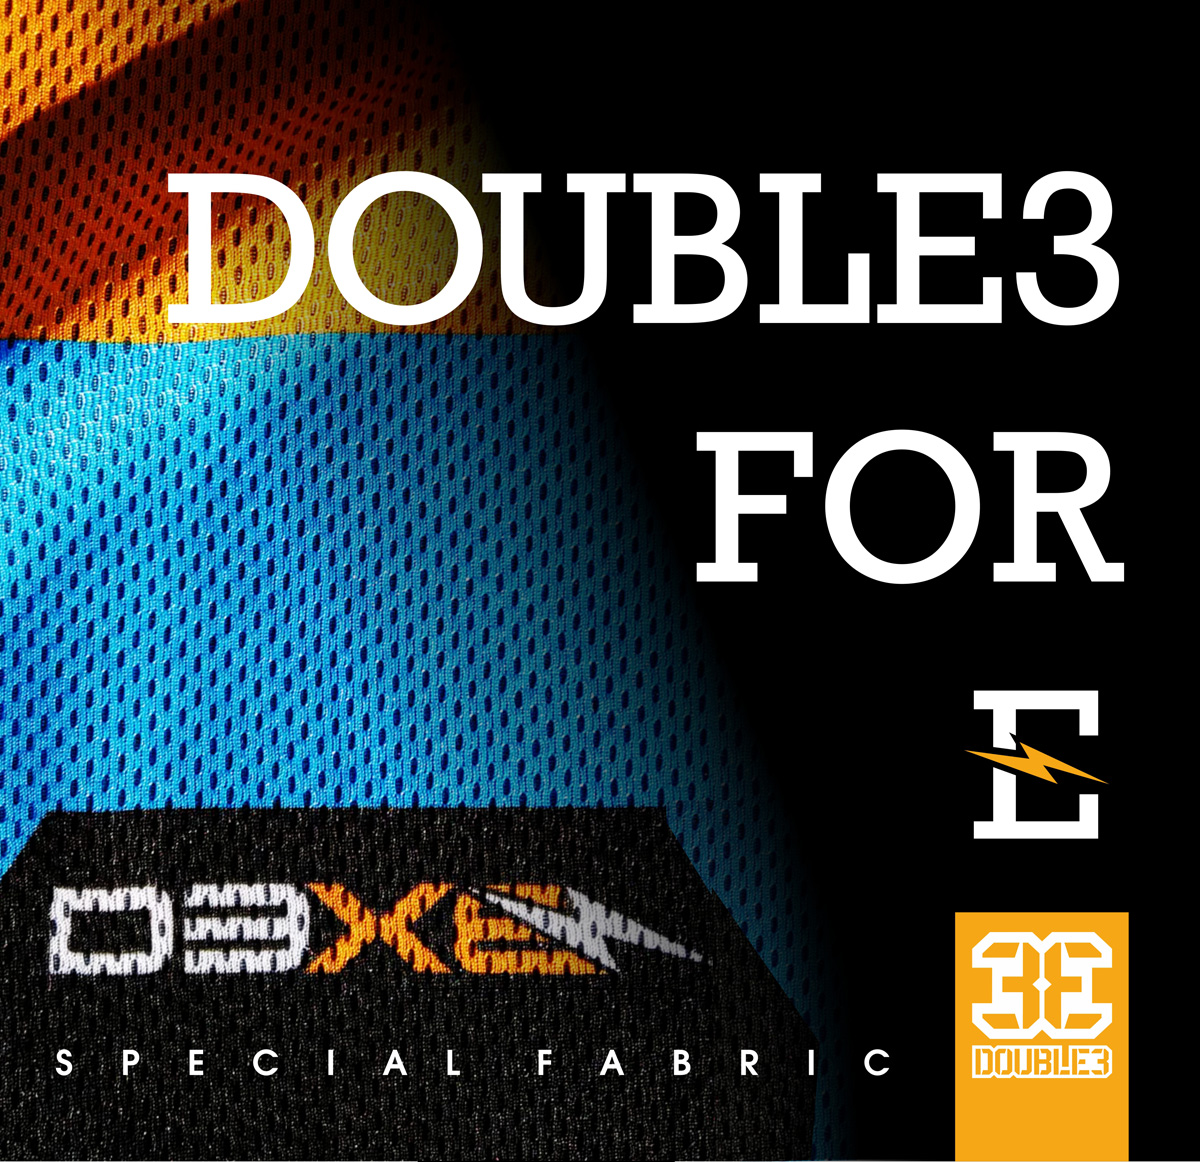 Immagine promozionale per abbigliamento D3xE di Double3